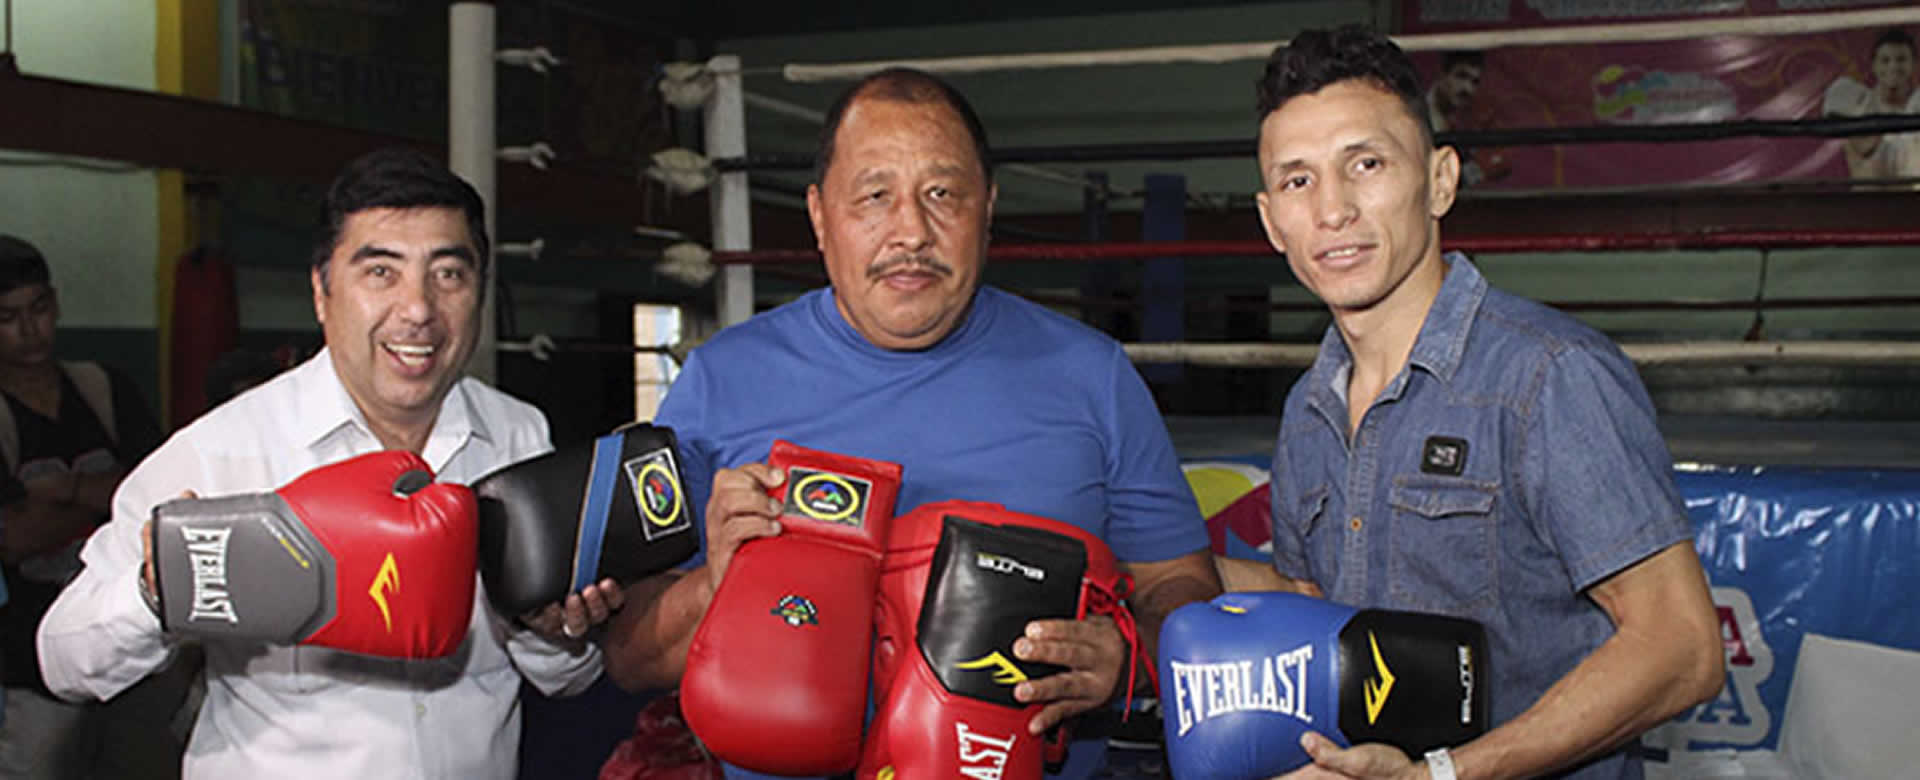 Academias de Boxeo inician sus clases en tres gimnasios de Managua